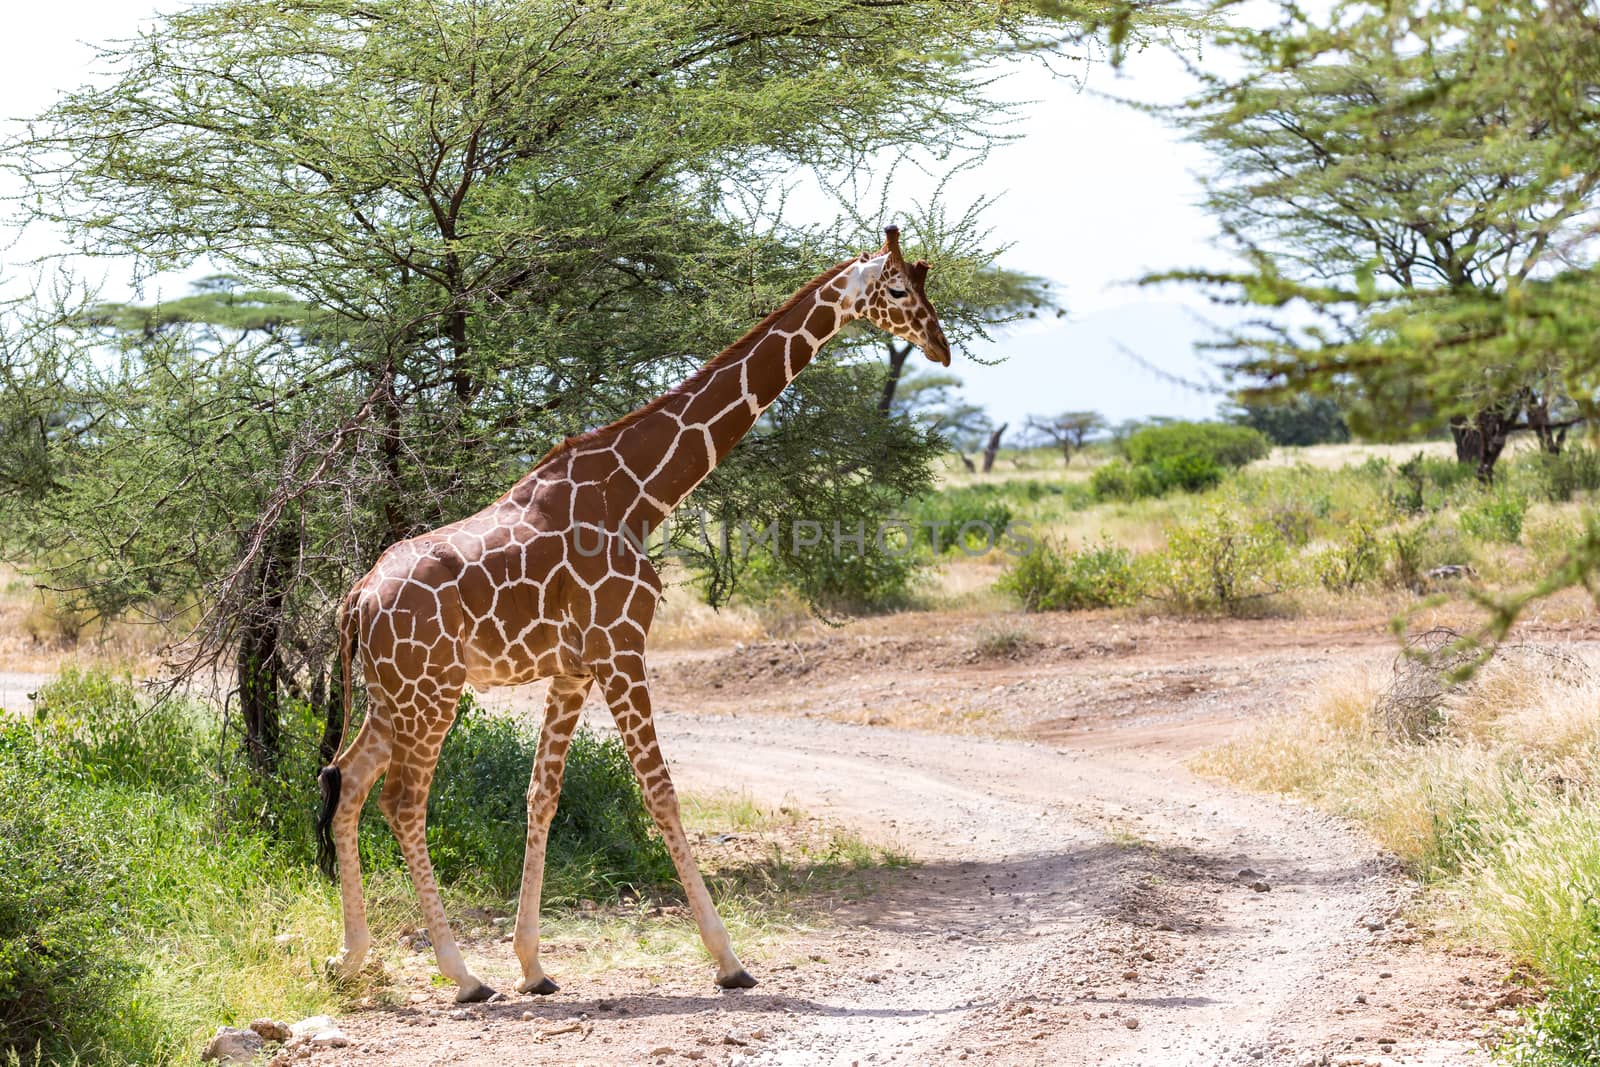 A giraffe crosses a path in the savannah by 25ehaag6